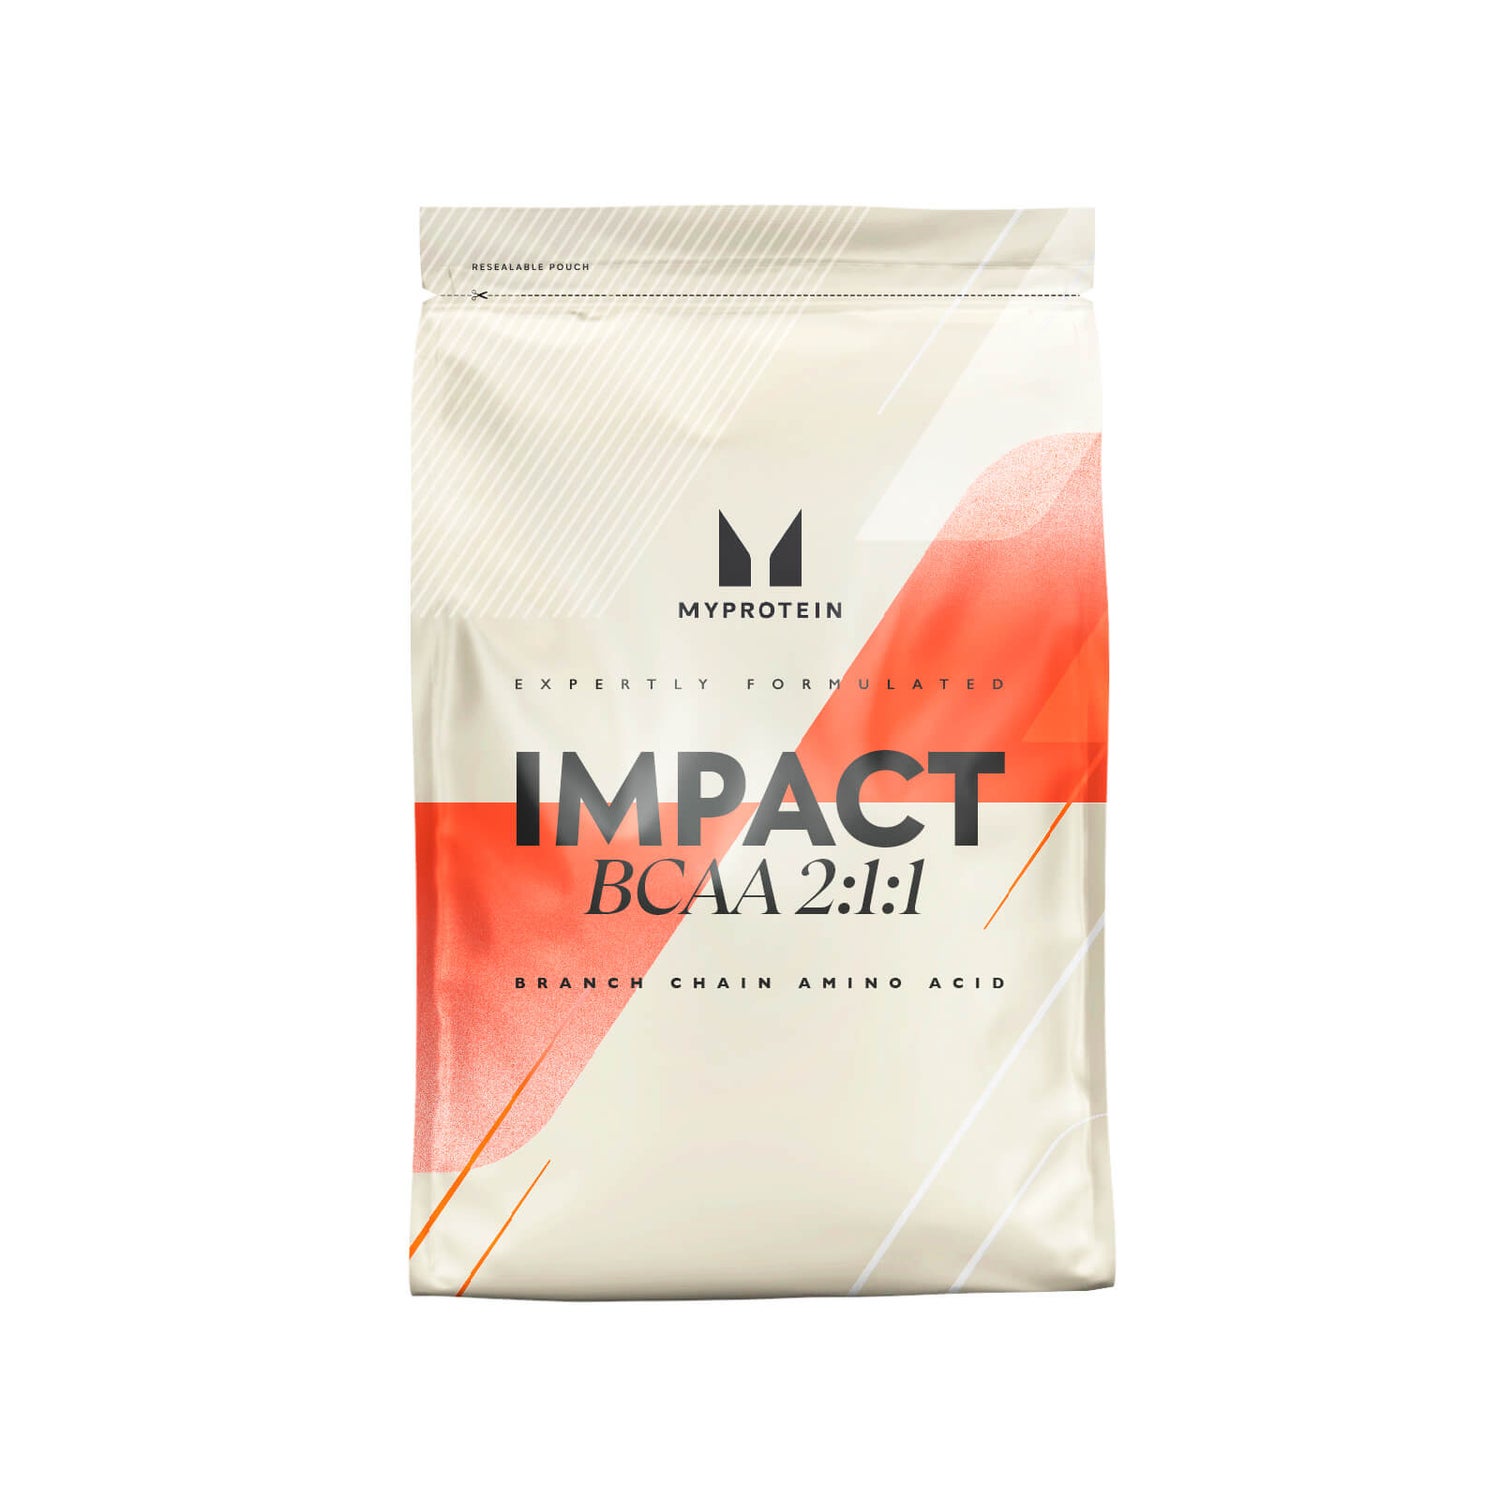 Impact BCAA 2:1:1 - 500g - Peach Mango